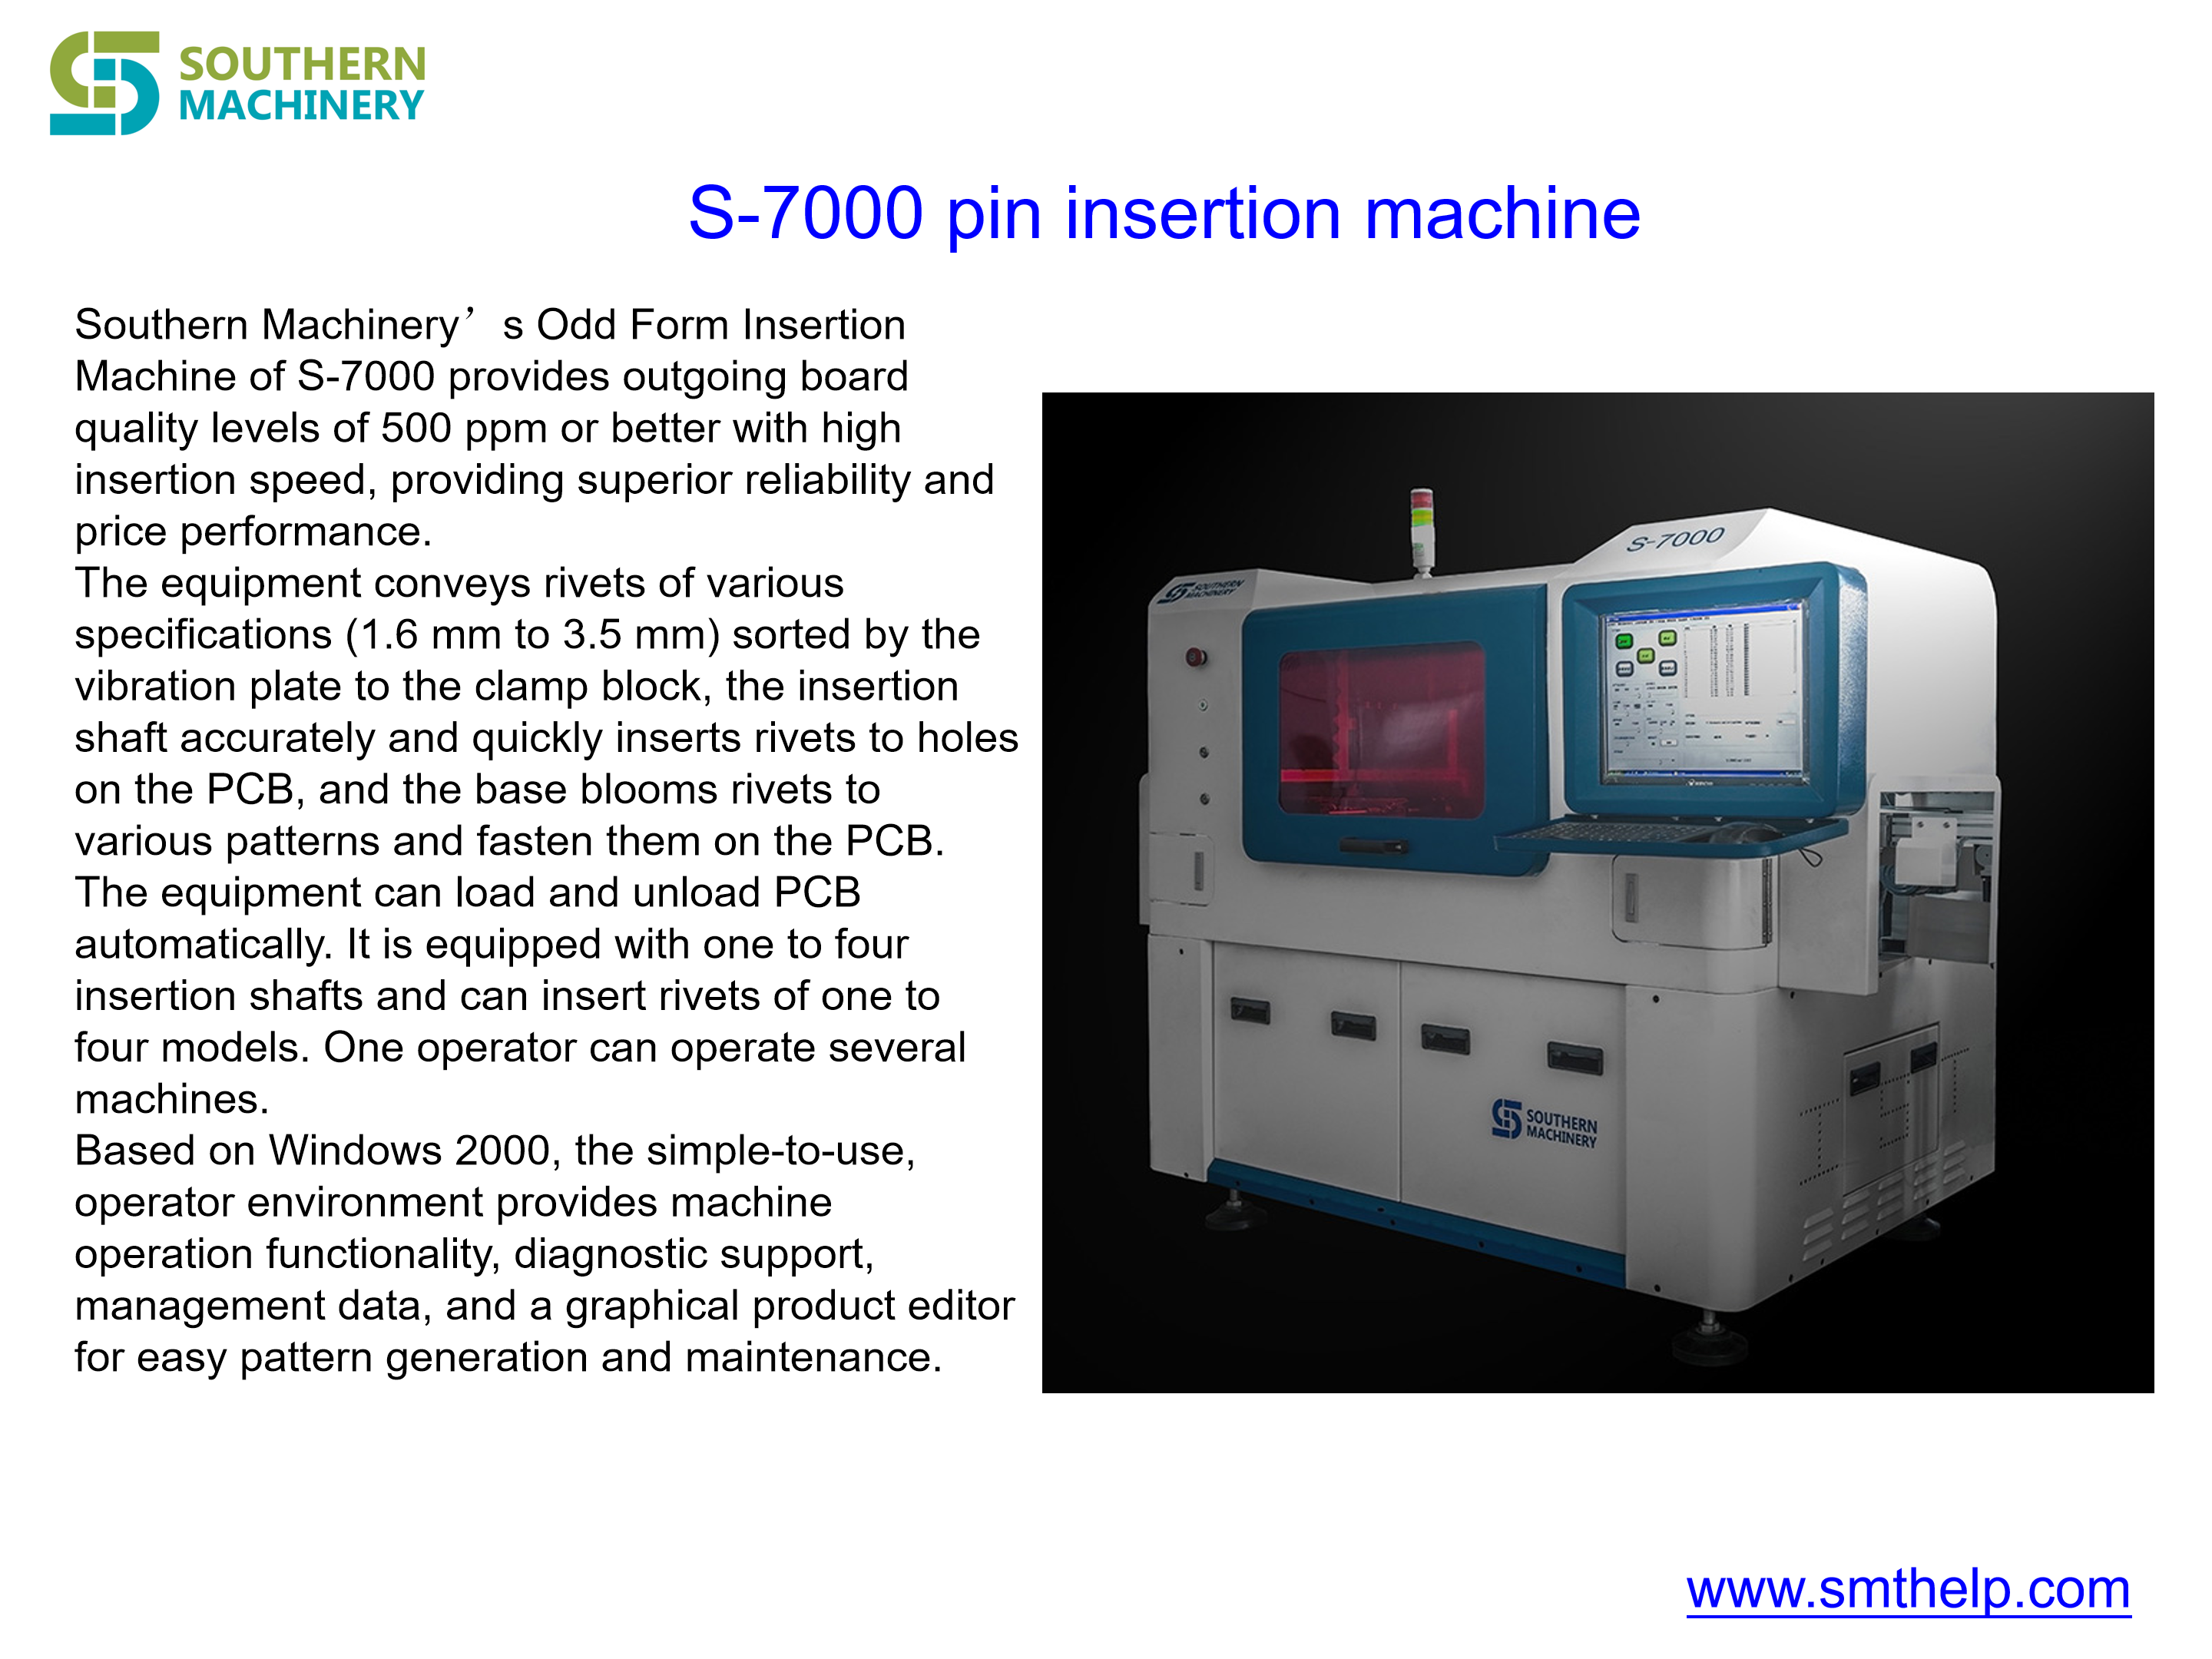 S-7000 Pin Insertion Machine